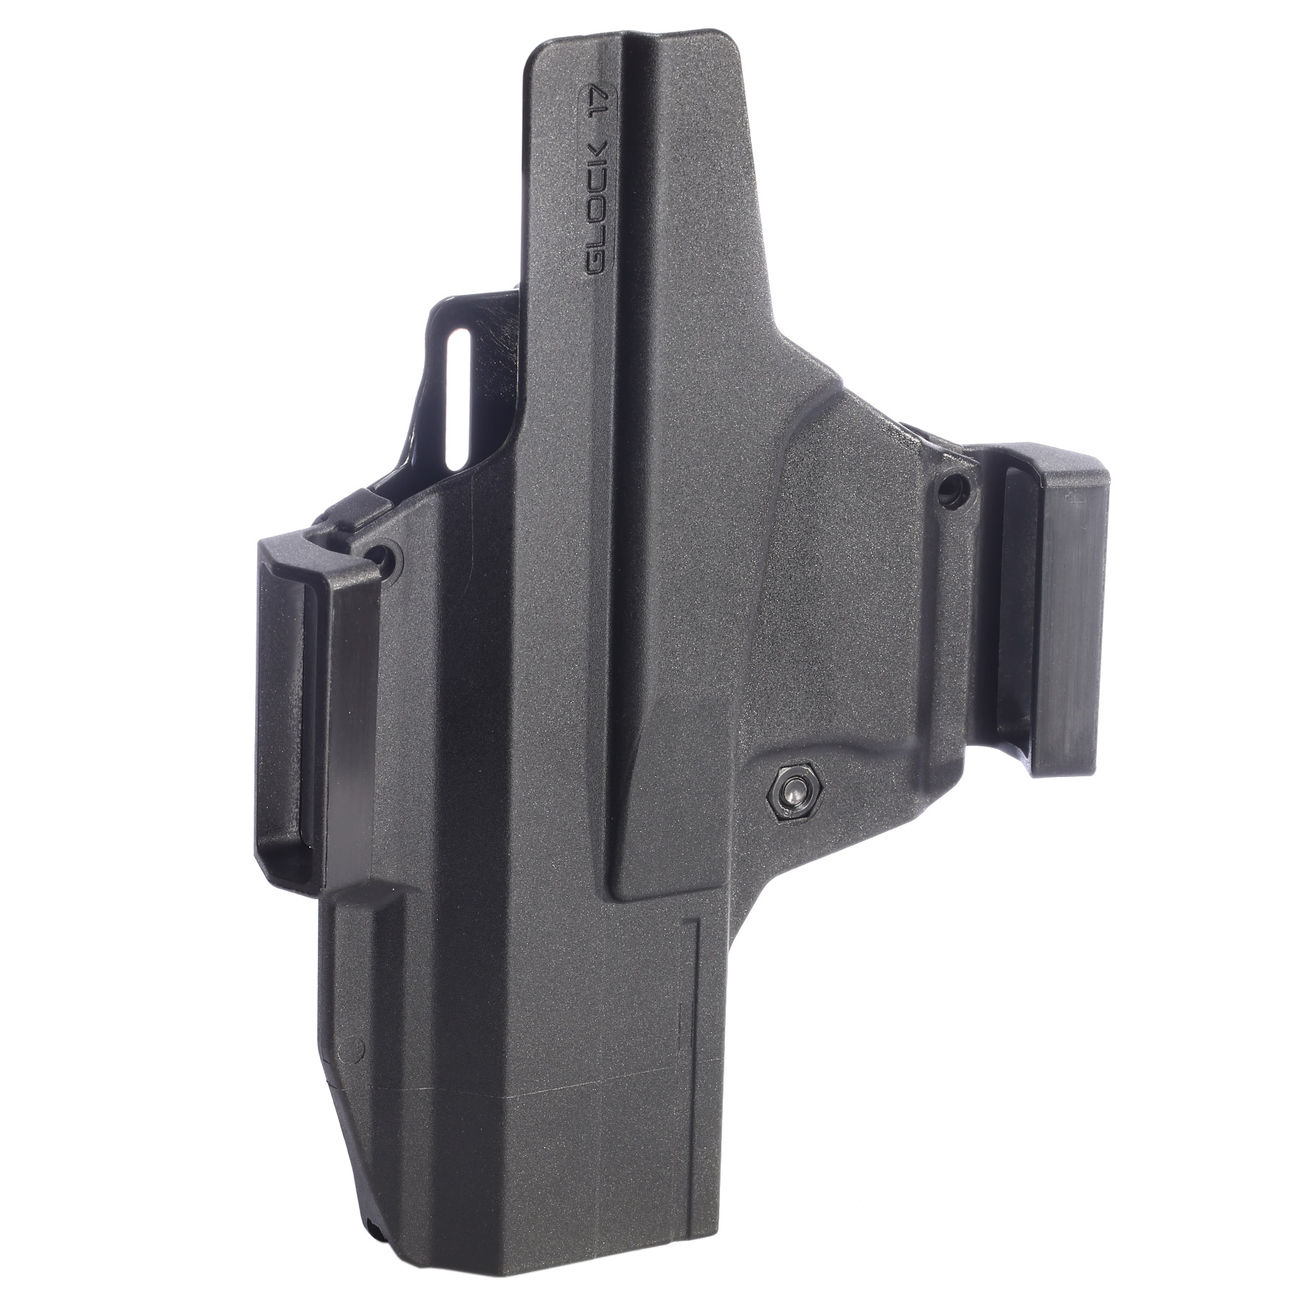 IMI Defense MORF X3 Polymer Holster IWB / OWB / Paddle für Glock 17 Rechts / Links schwarz Bild 1